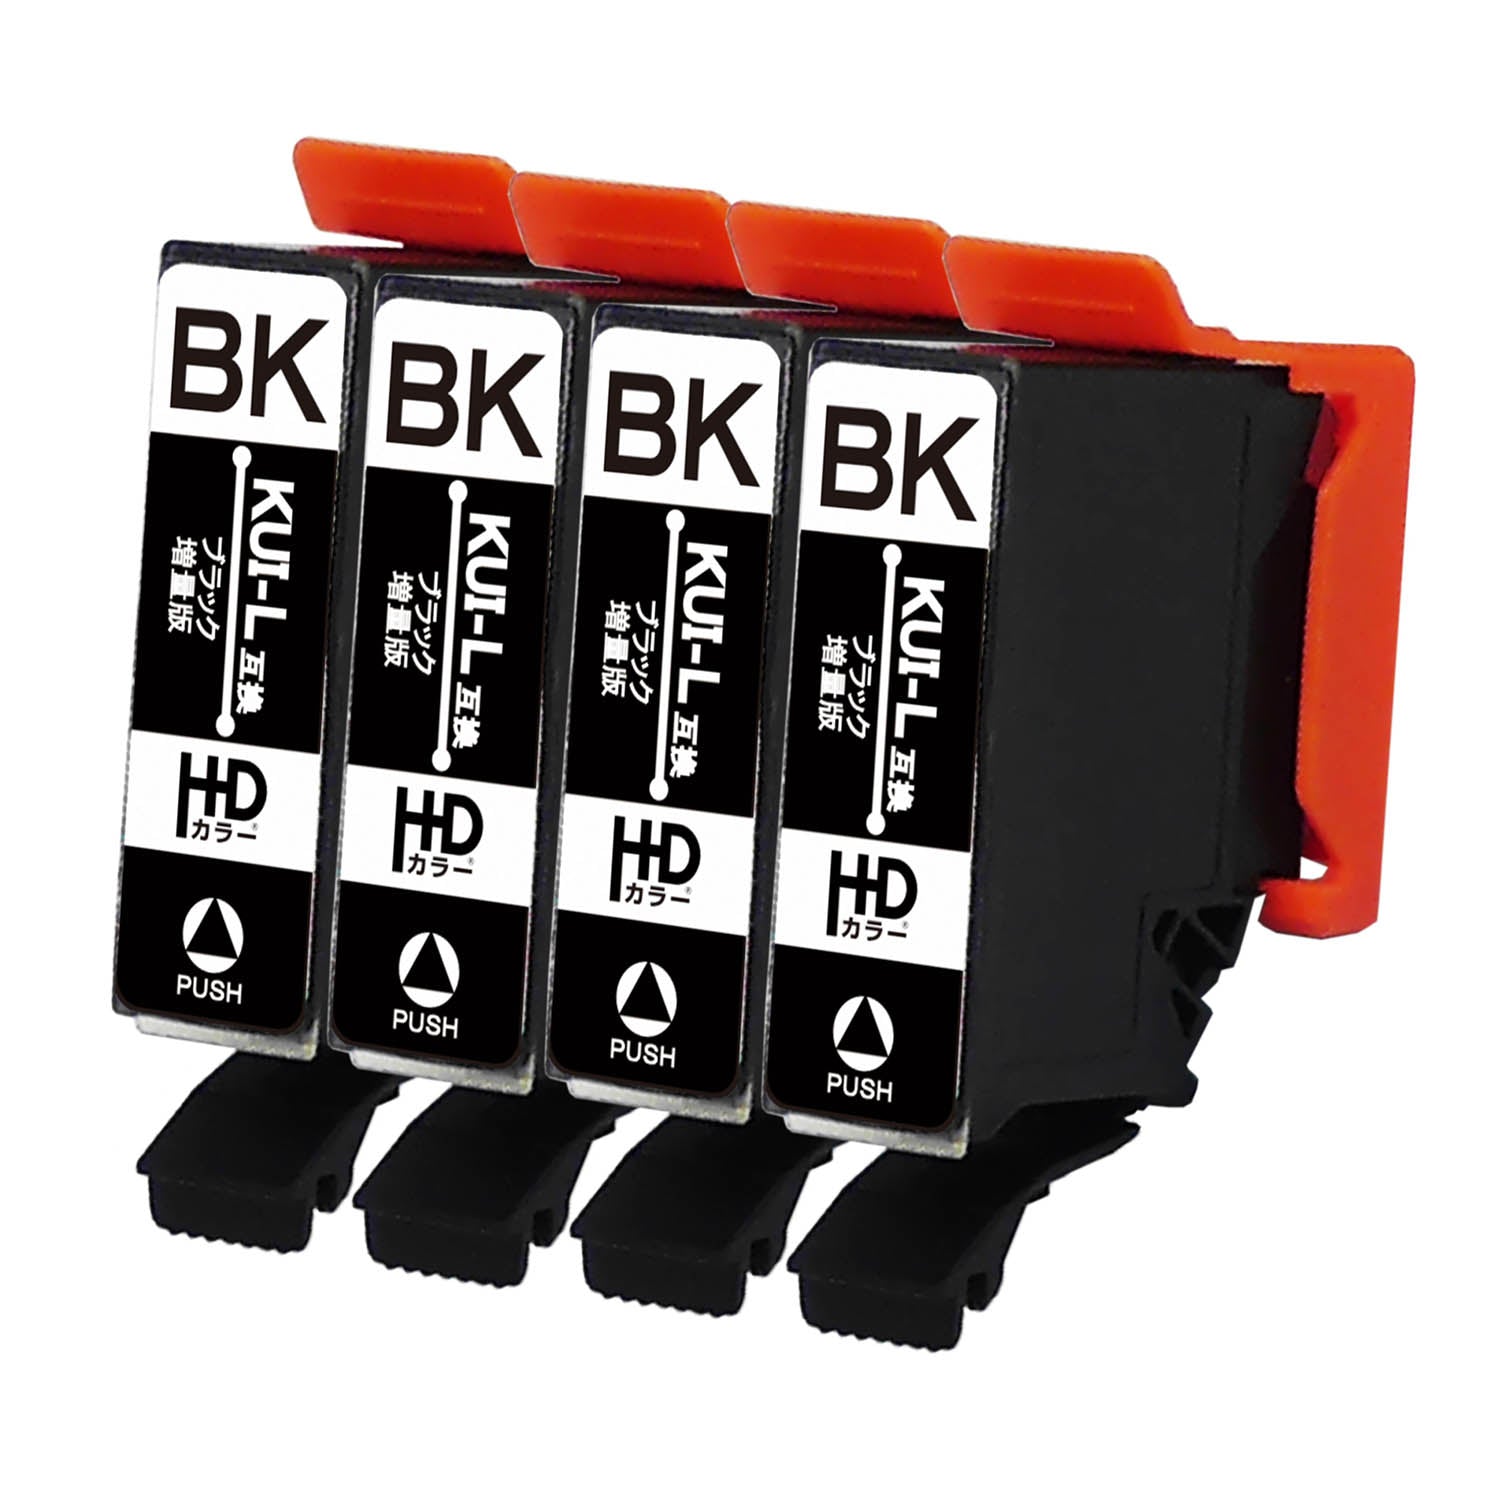 エプソン用 KUI-BK-L (クマノミ) 互換インク ブラック 増量版